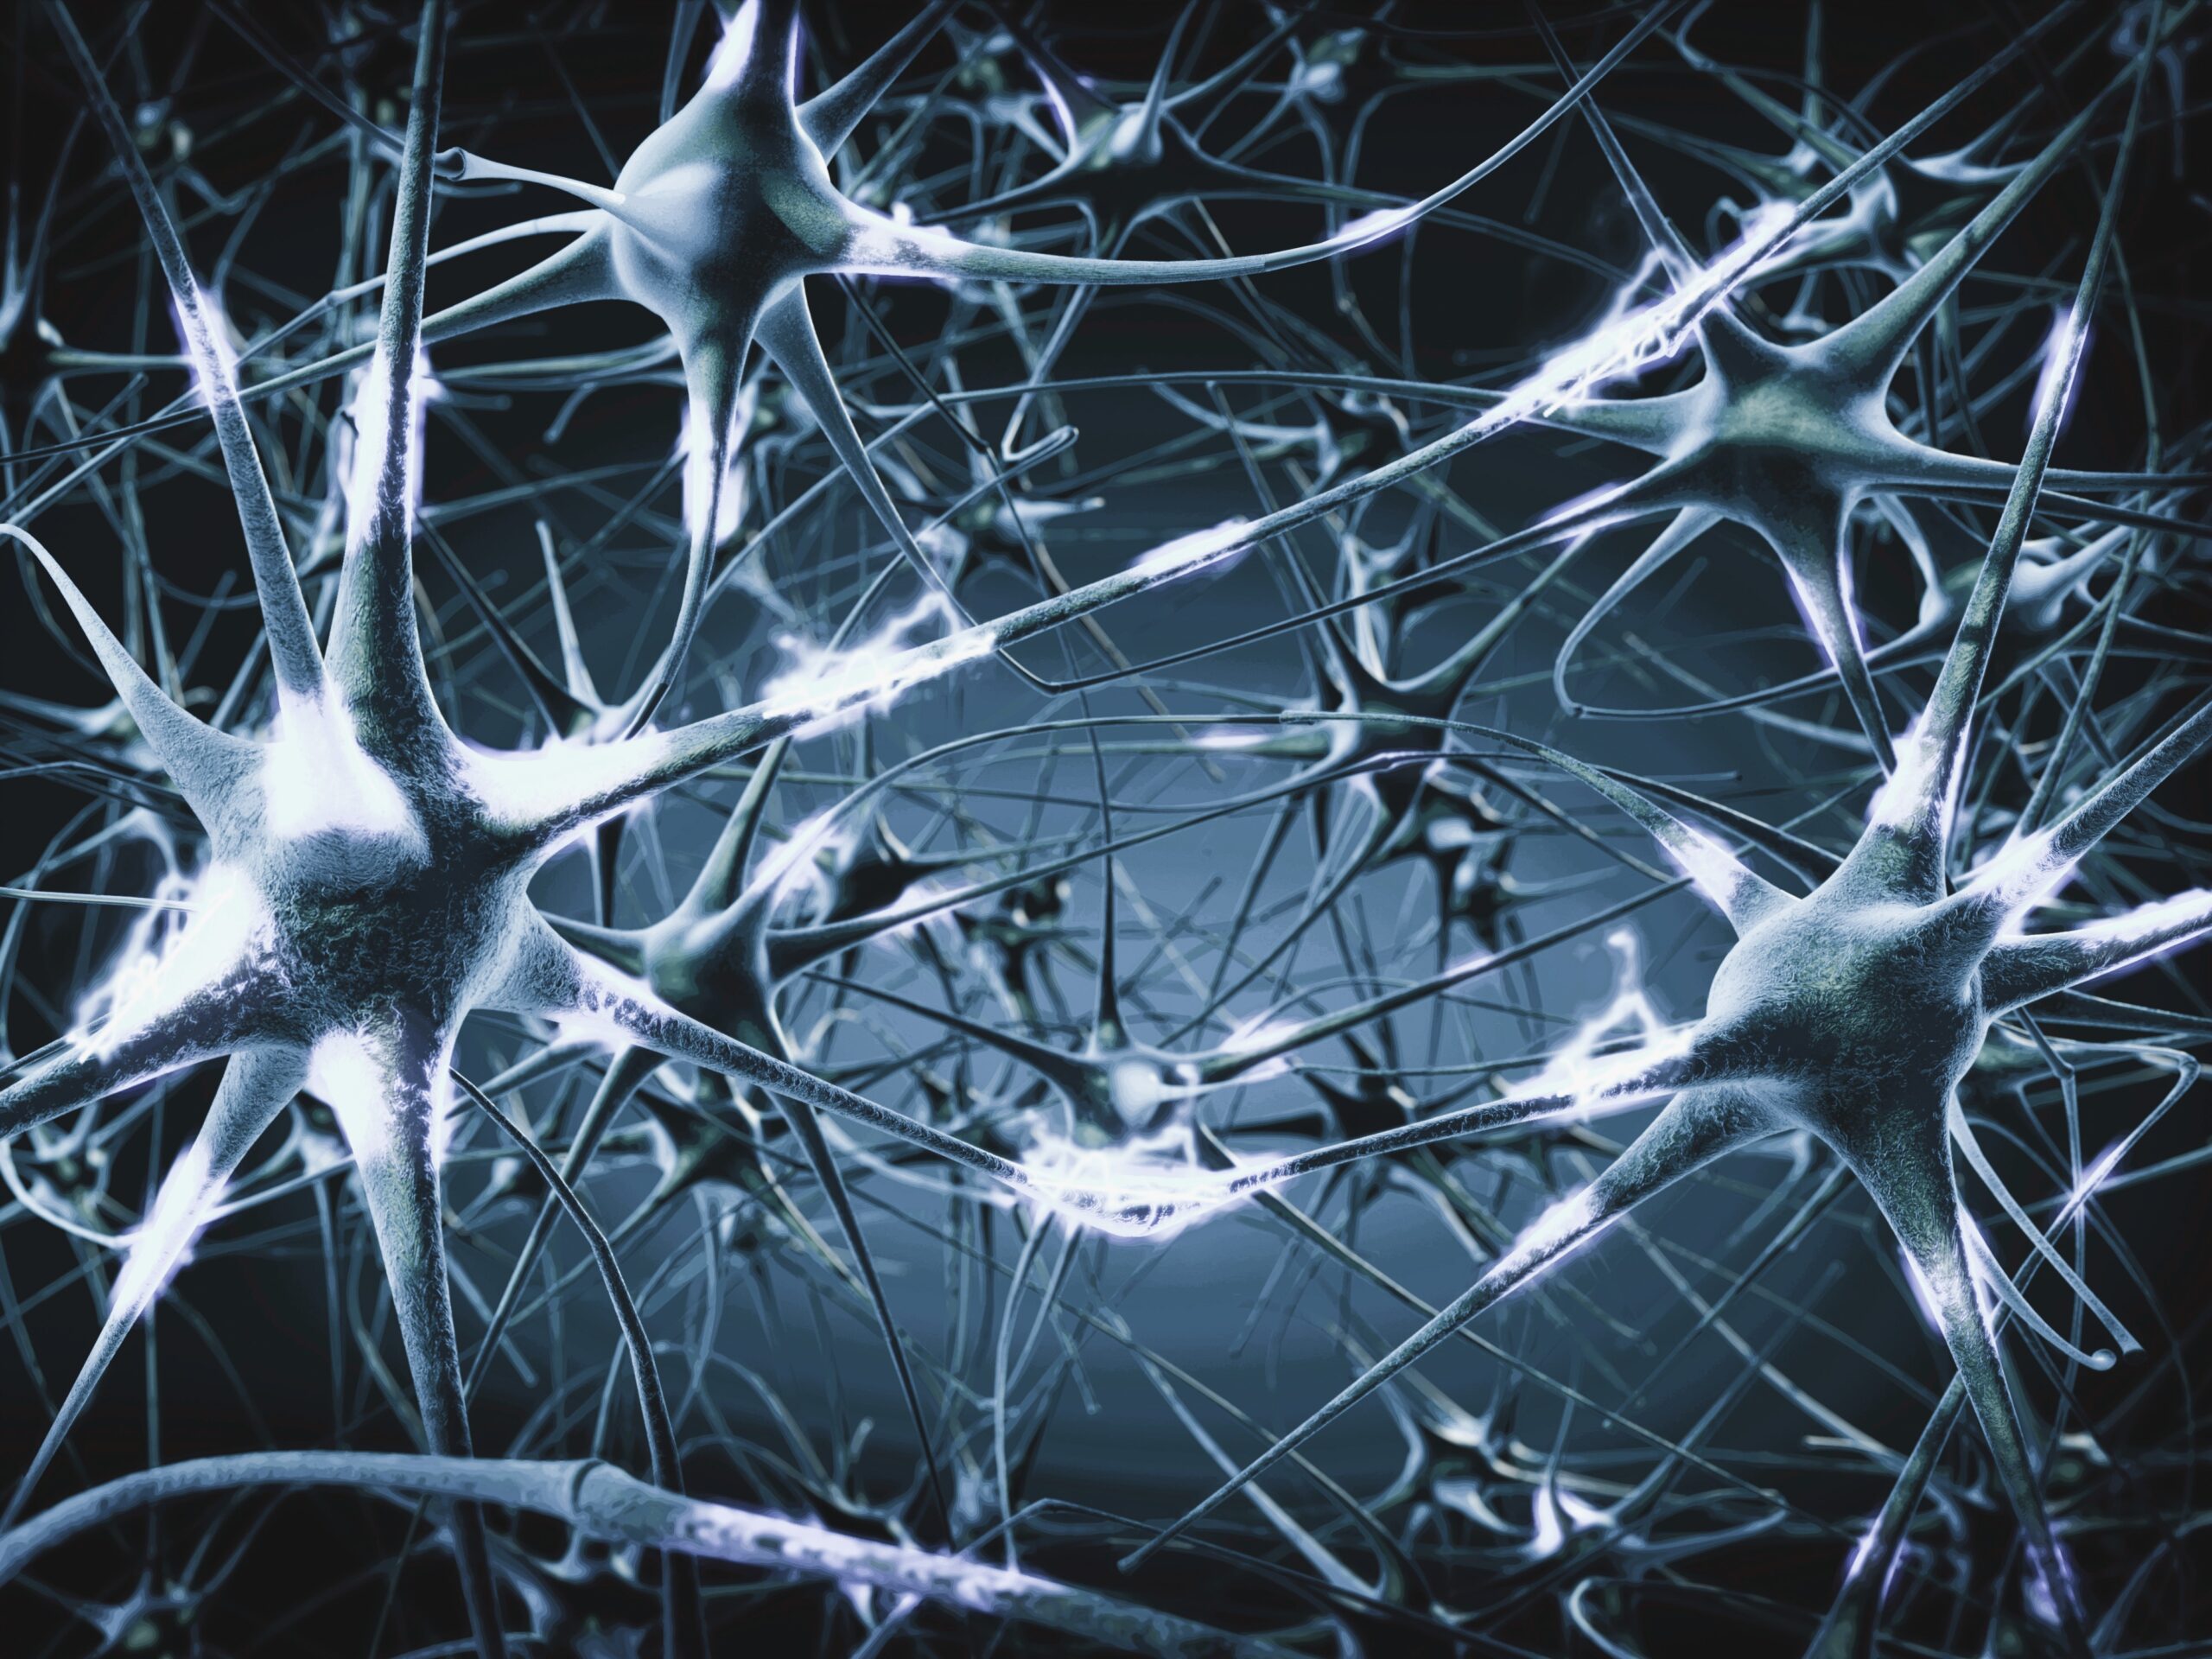 Im Bild ist ein neuronales Netzwerk zu sehen, das darauf verweist, dass Wissen über unsere Neurobiologie nützlich ist, um zu verstehen, warum wir uns verhalten, wie wir uns verhalten; gerade in Konflikten.